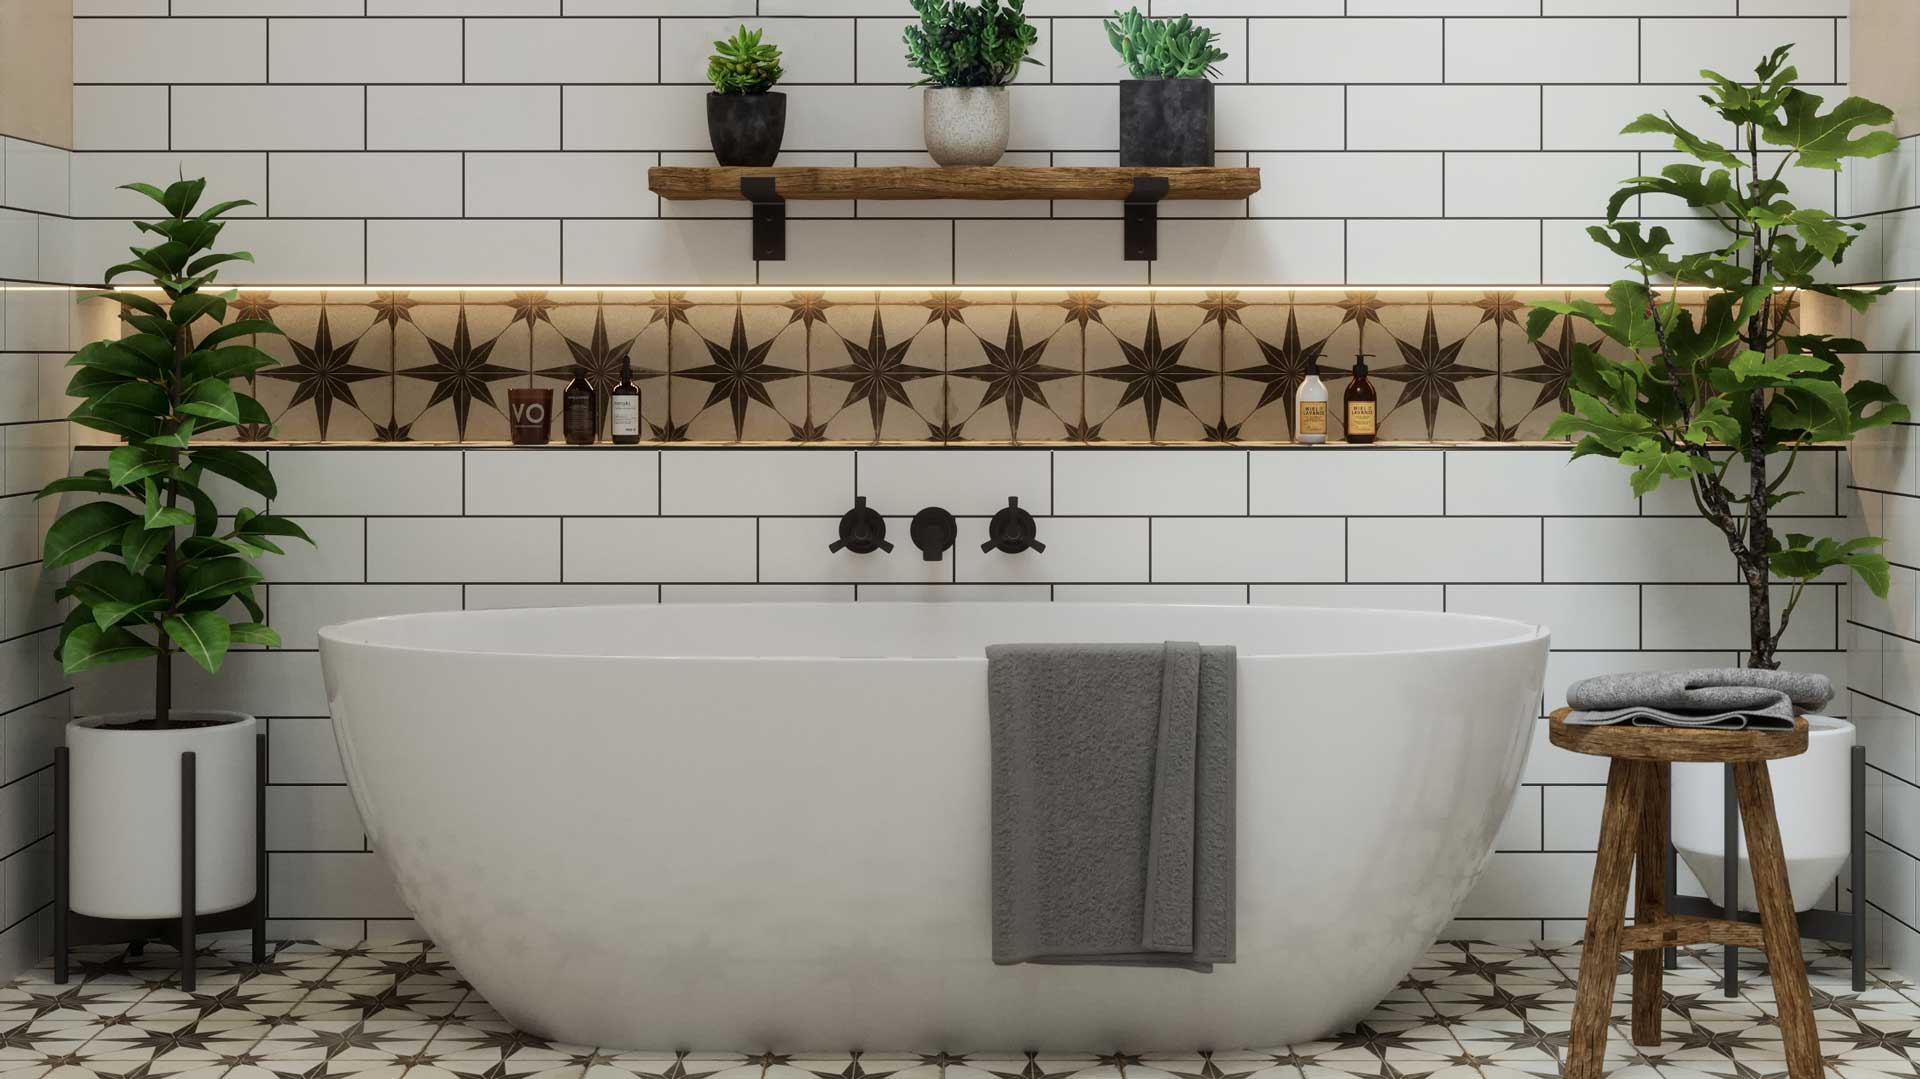 Bathroom Encaustic Tile Ideas, Encaustic Style Tiles